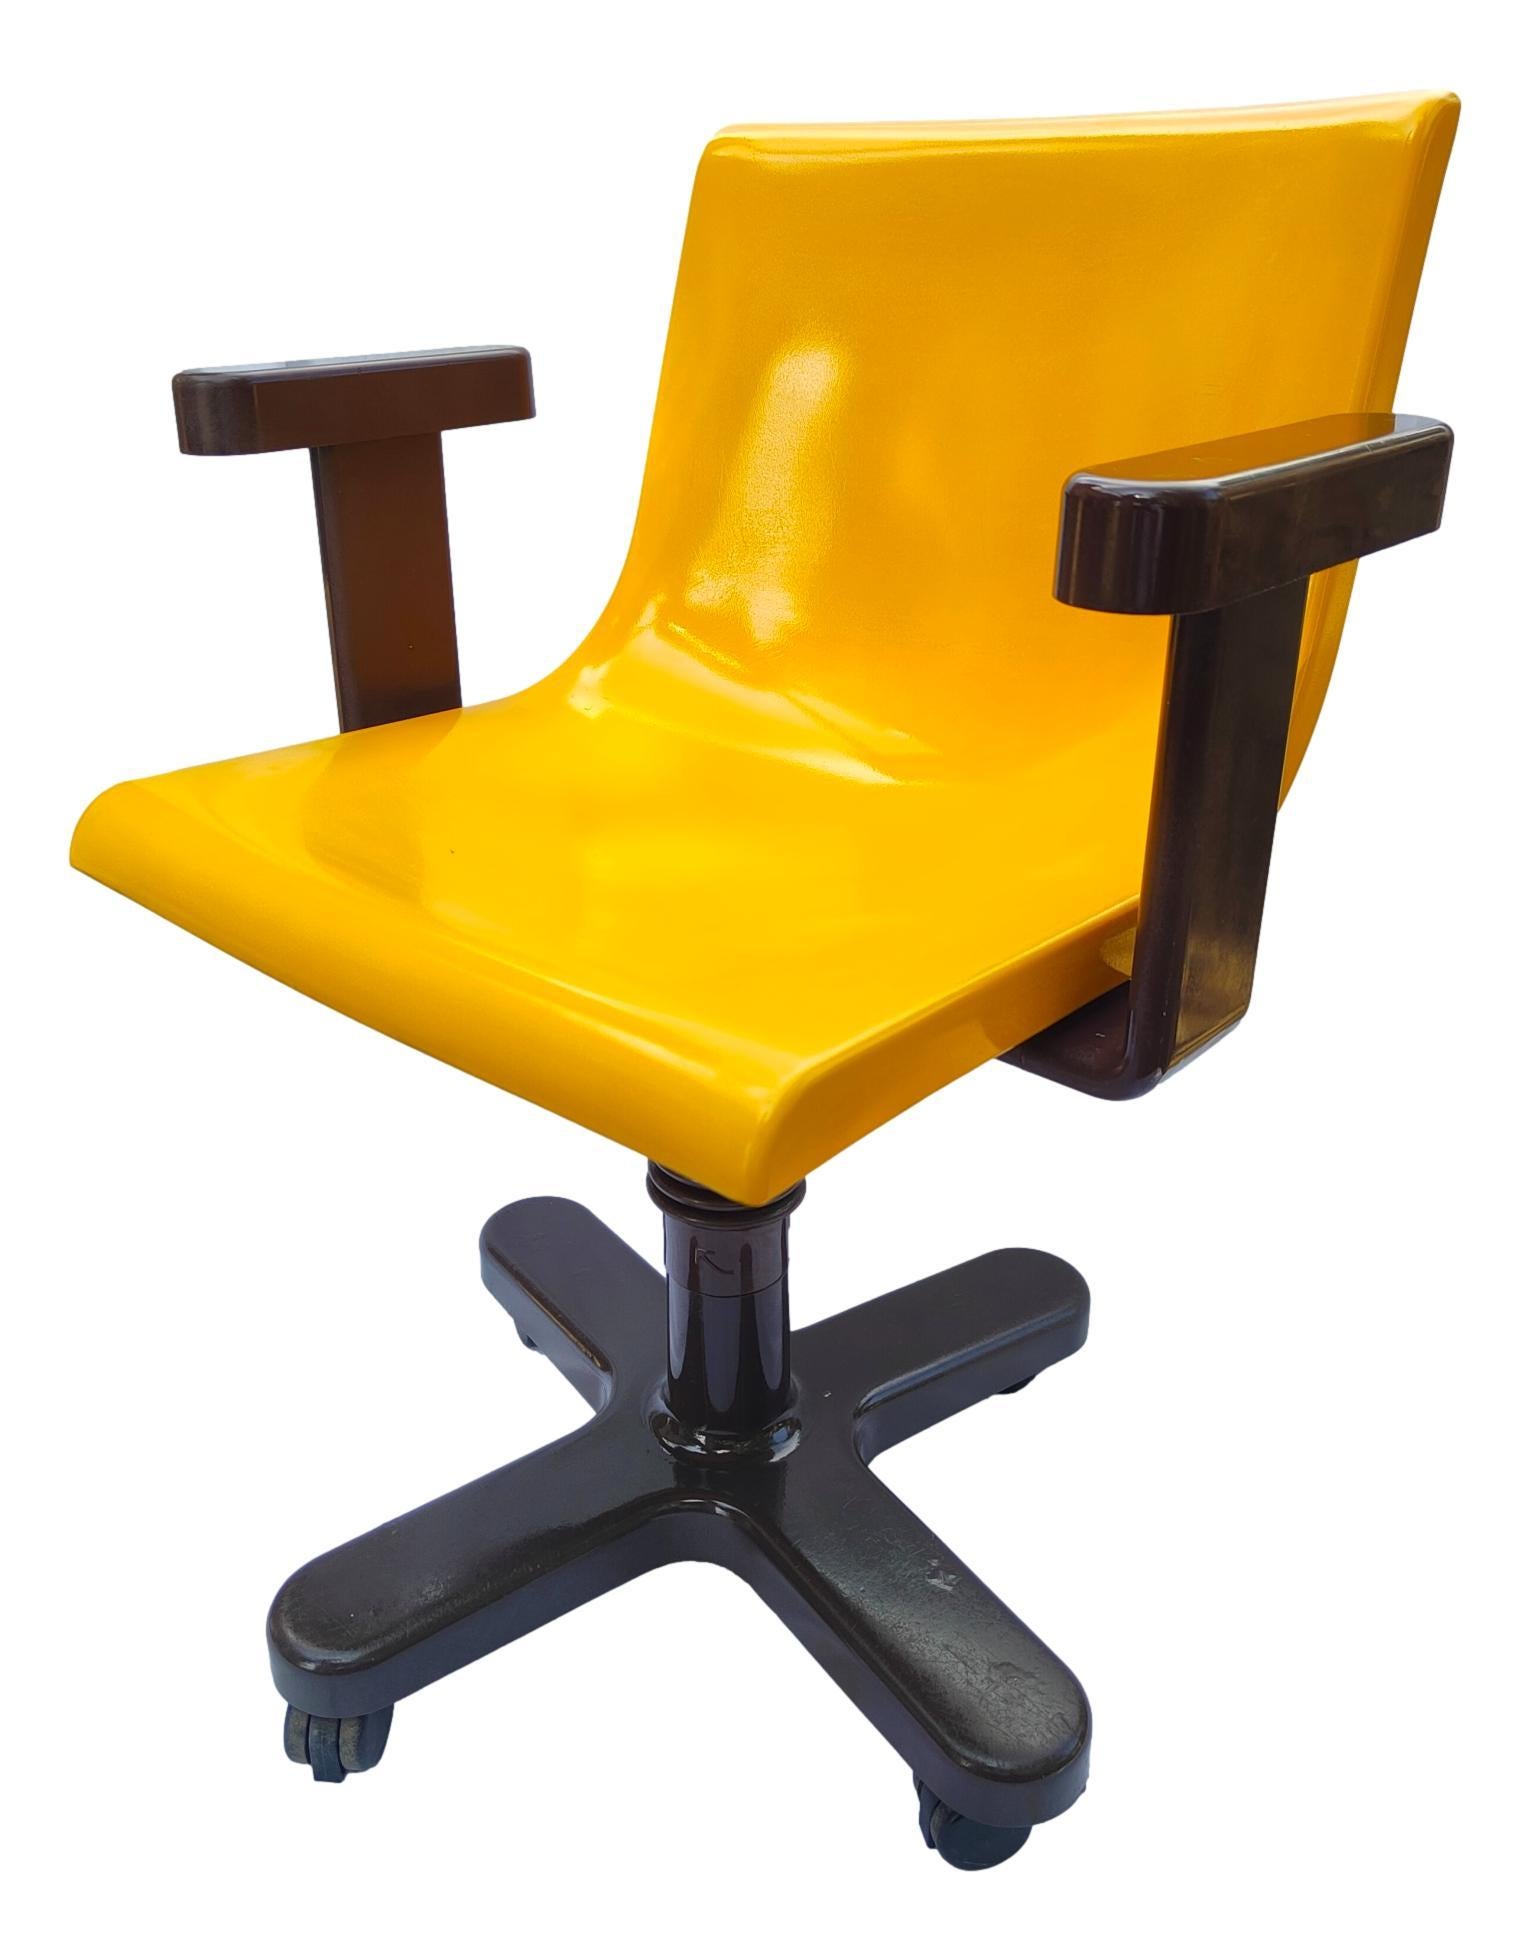 20th Century Sedia Da Collezione Desk Chair Olivetti Synthesis Design Ettore Sottsass 1975 For Sale